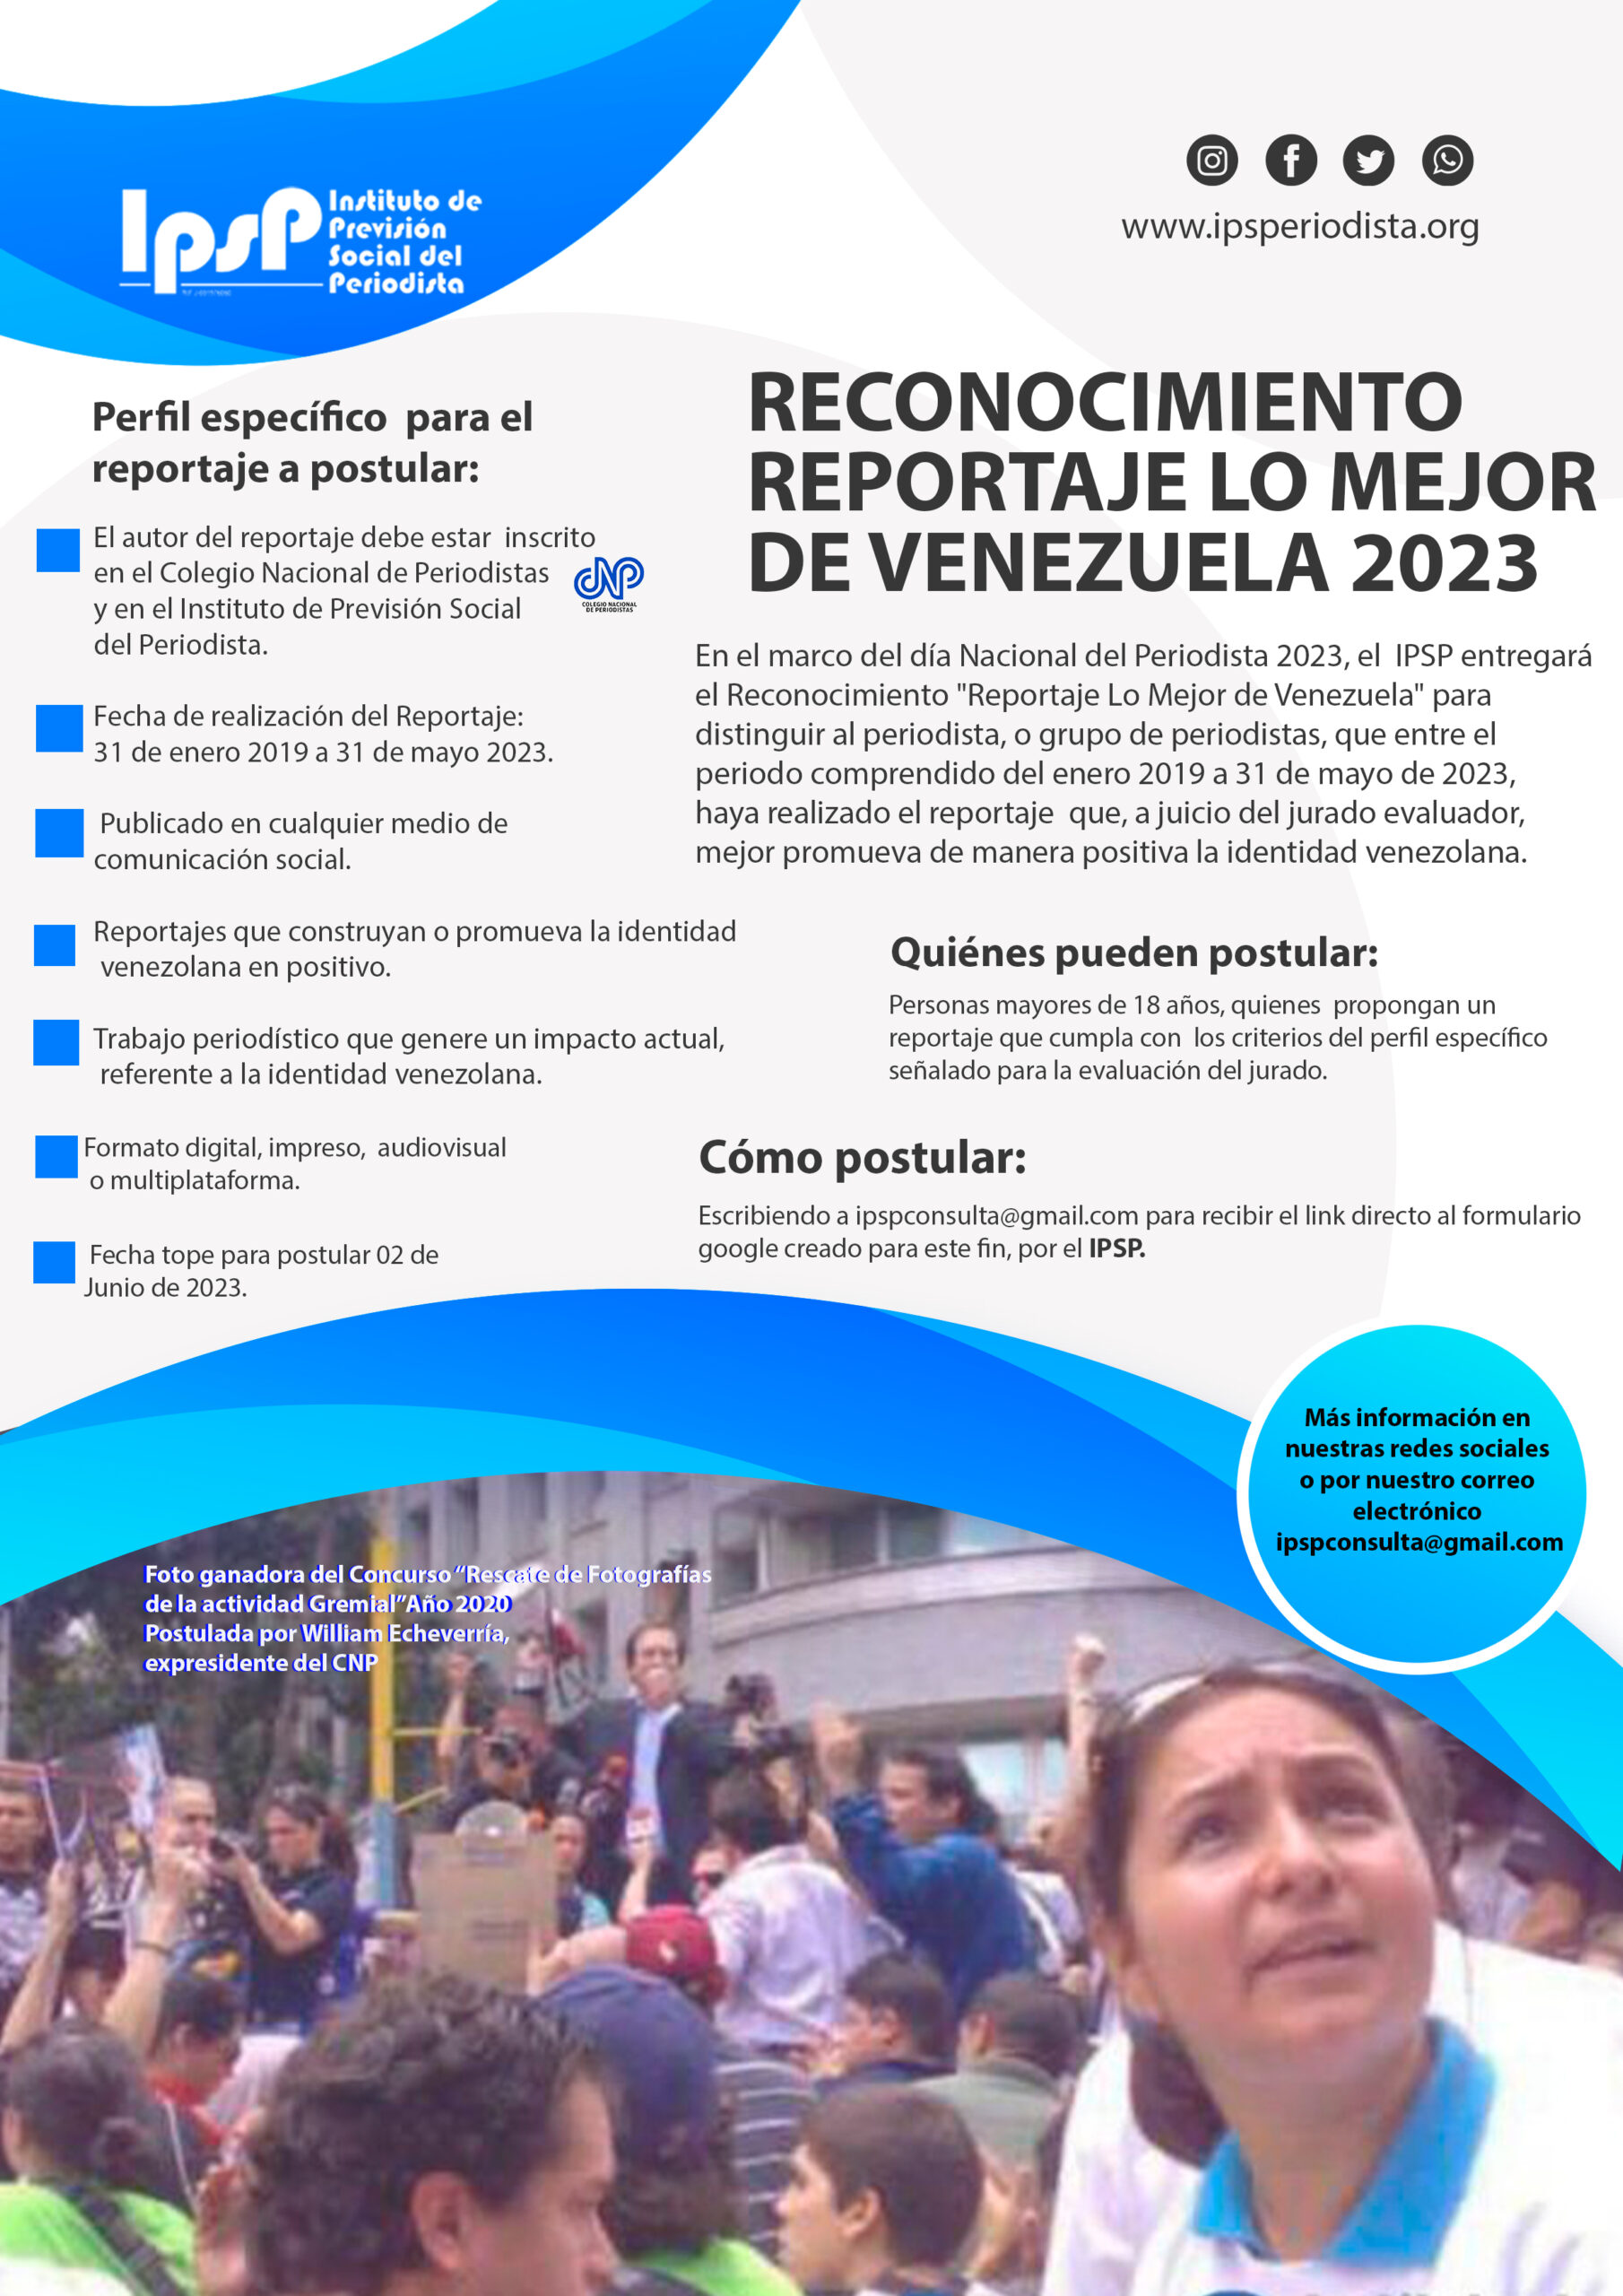  IPSP invita a postular al Reconocimiento “Reportaje Lo Mejor de Venezuela 2023